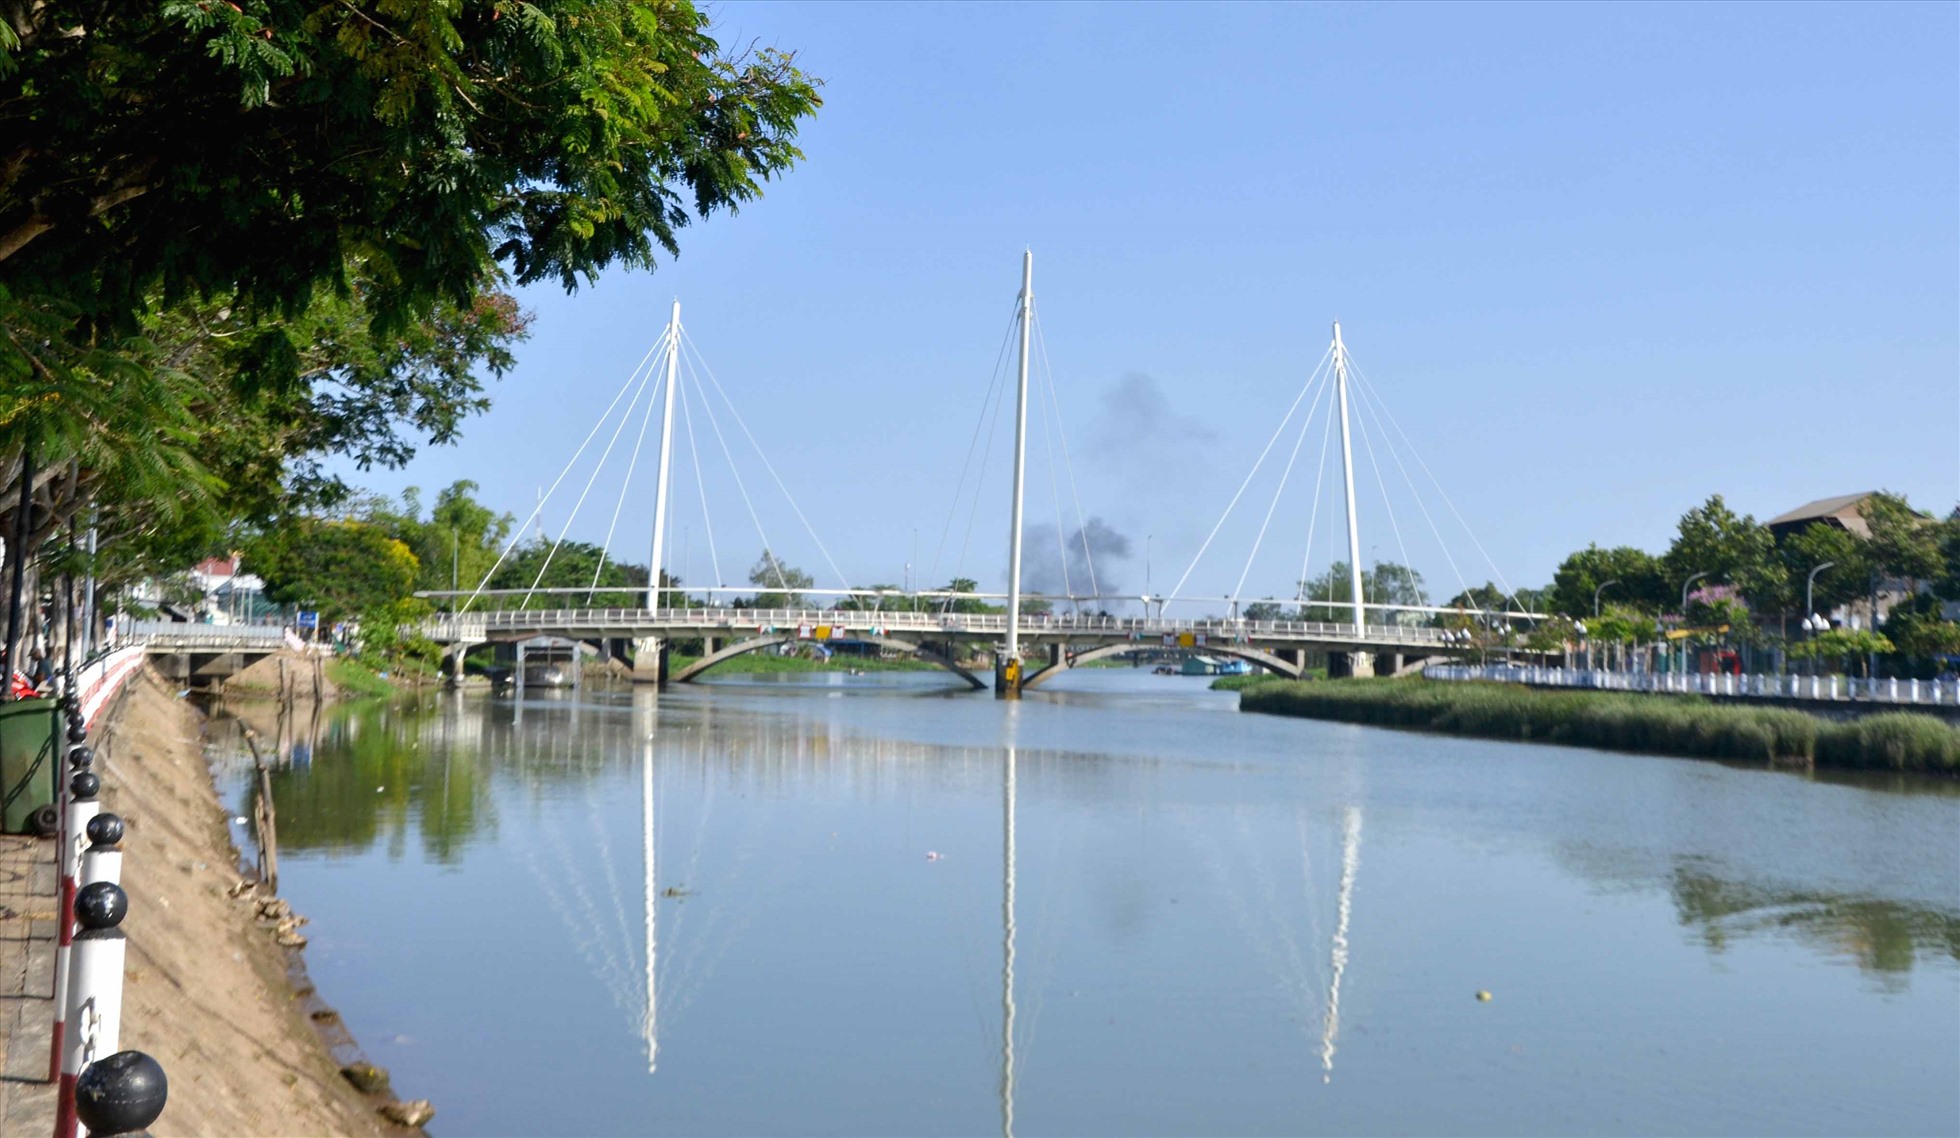 Cầu Nguyễn Thái Học, nhìn từ xa. Ảnh: Thanh Mai